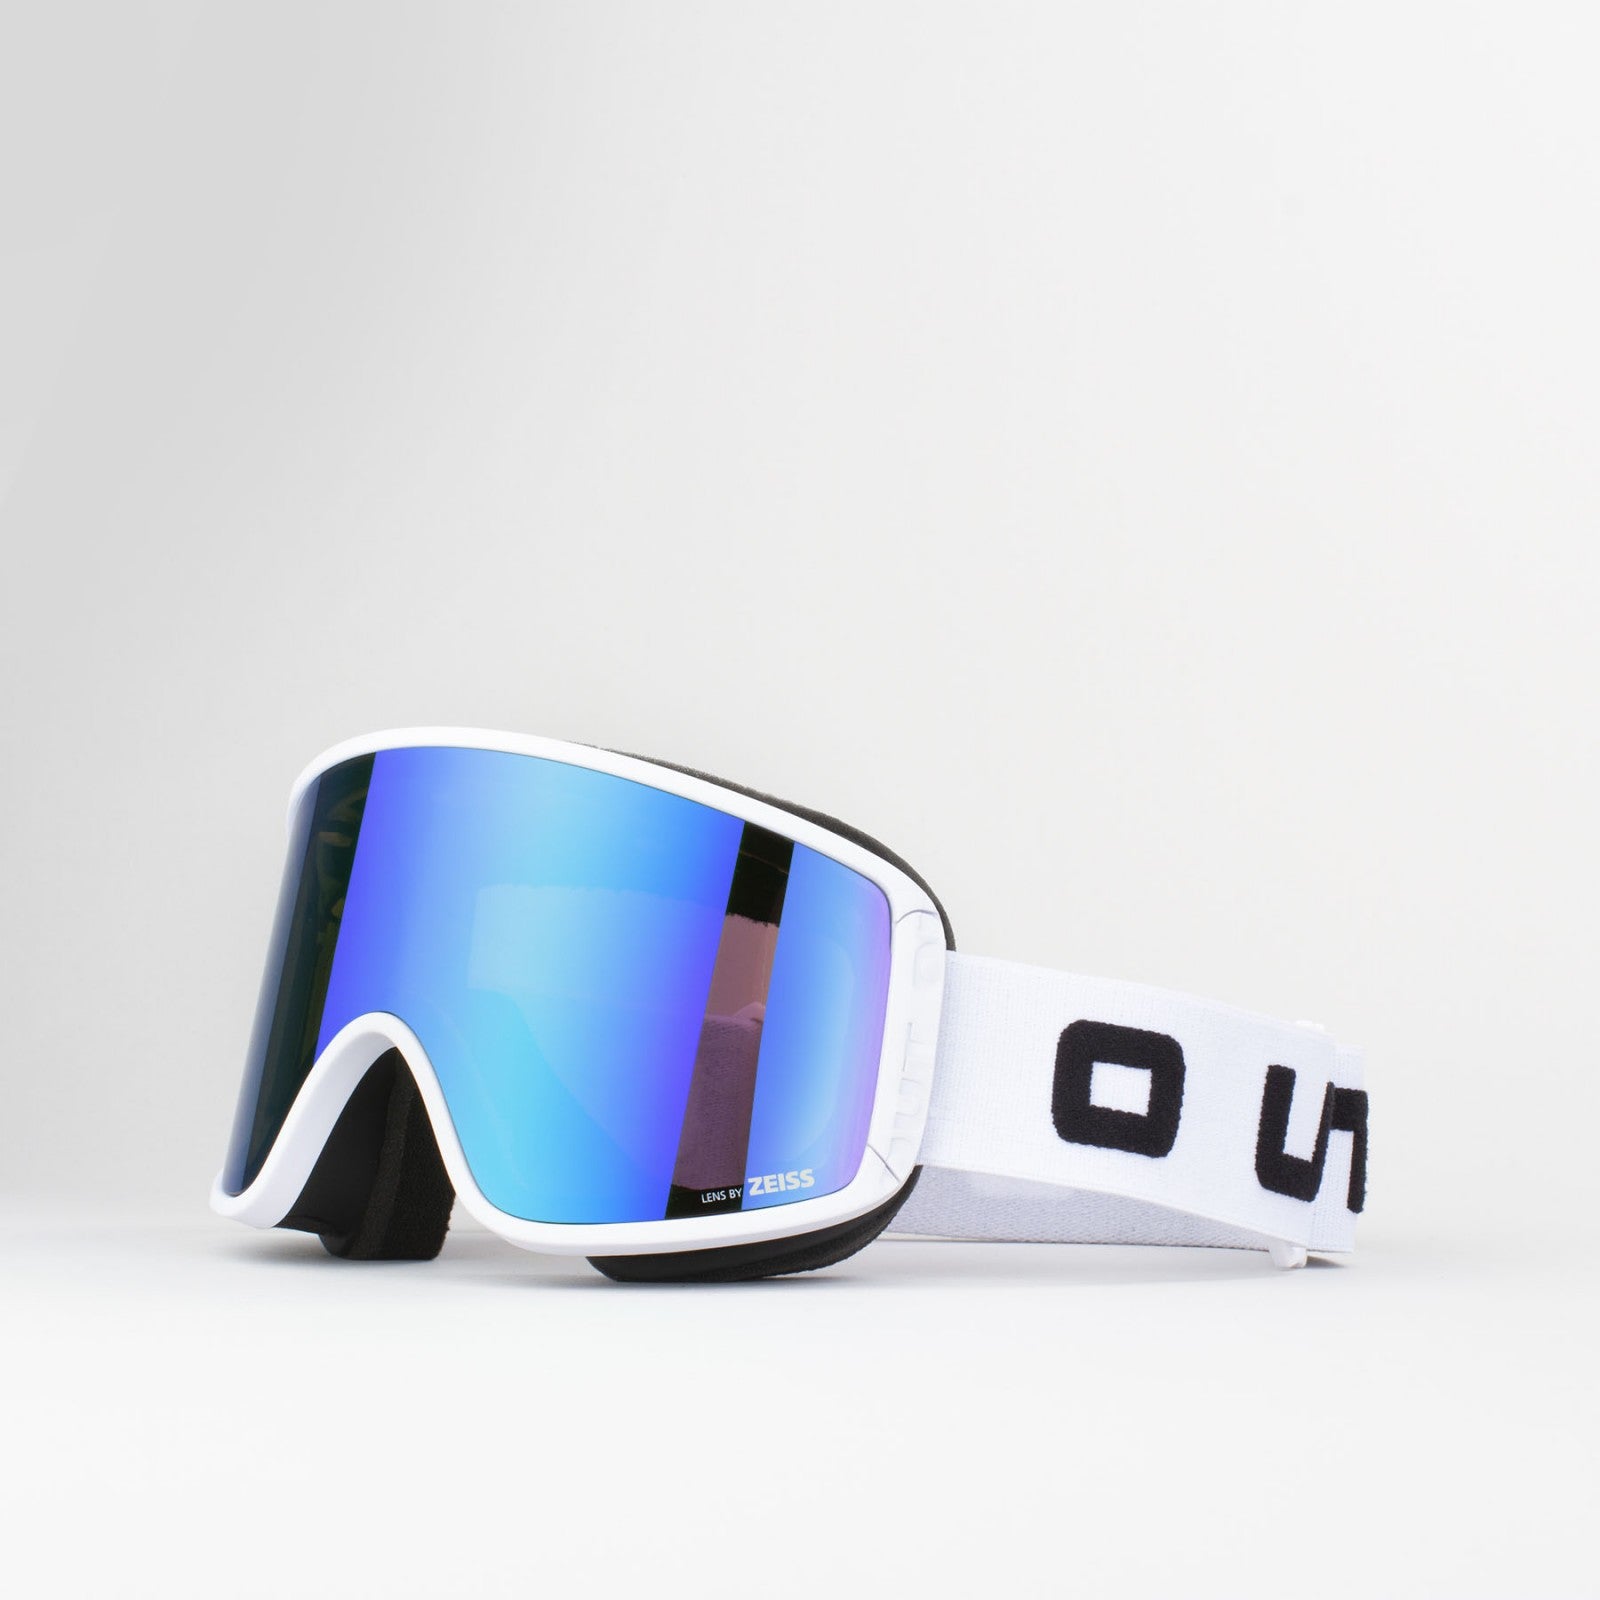 Maschera-Sci-Snowboard-OutOf-Out-of-shift-white-blue-neverland-firenze